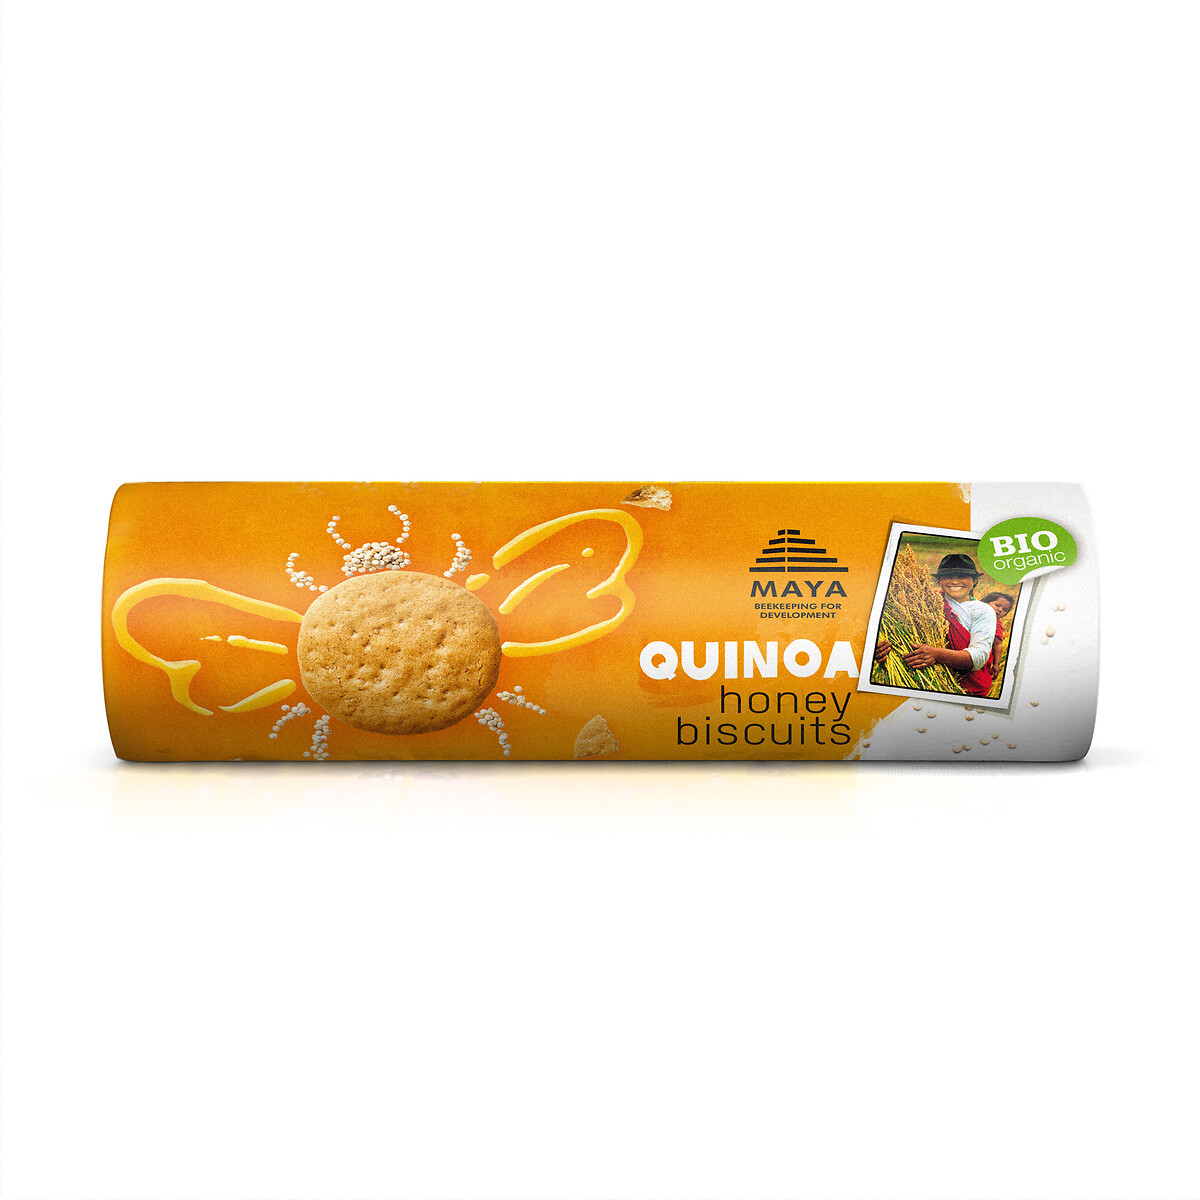 Maya quinoa koekjes honing bio